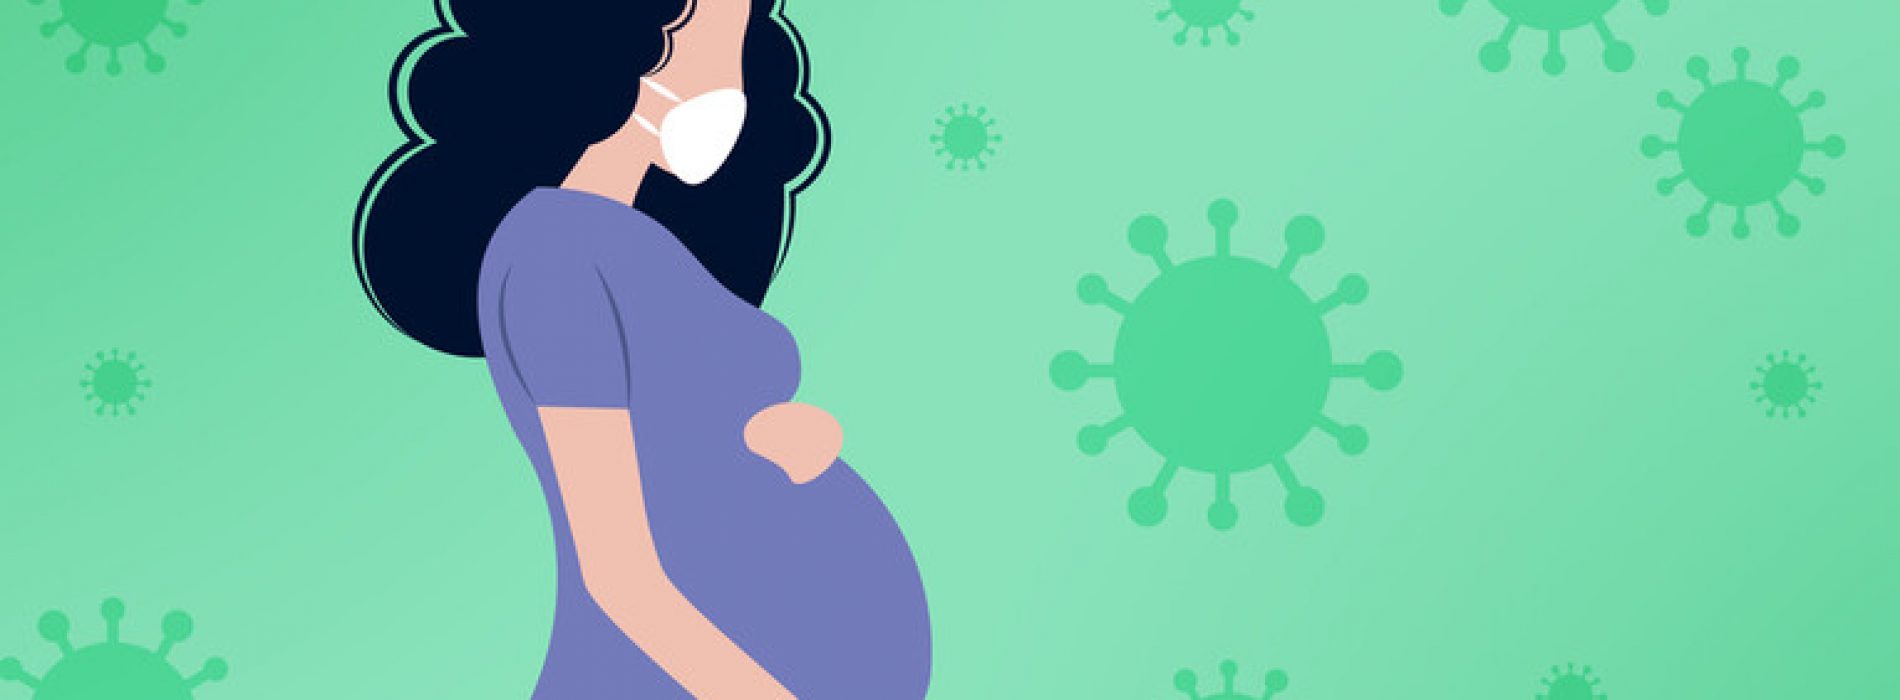 Het immuunsysteem, niet het COVID-virus, kan het grootste risico vormen voor zwangere vrouwen